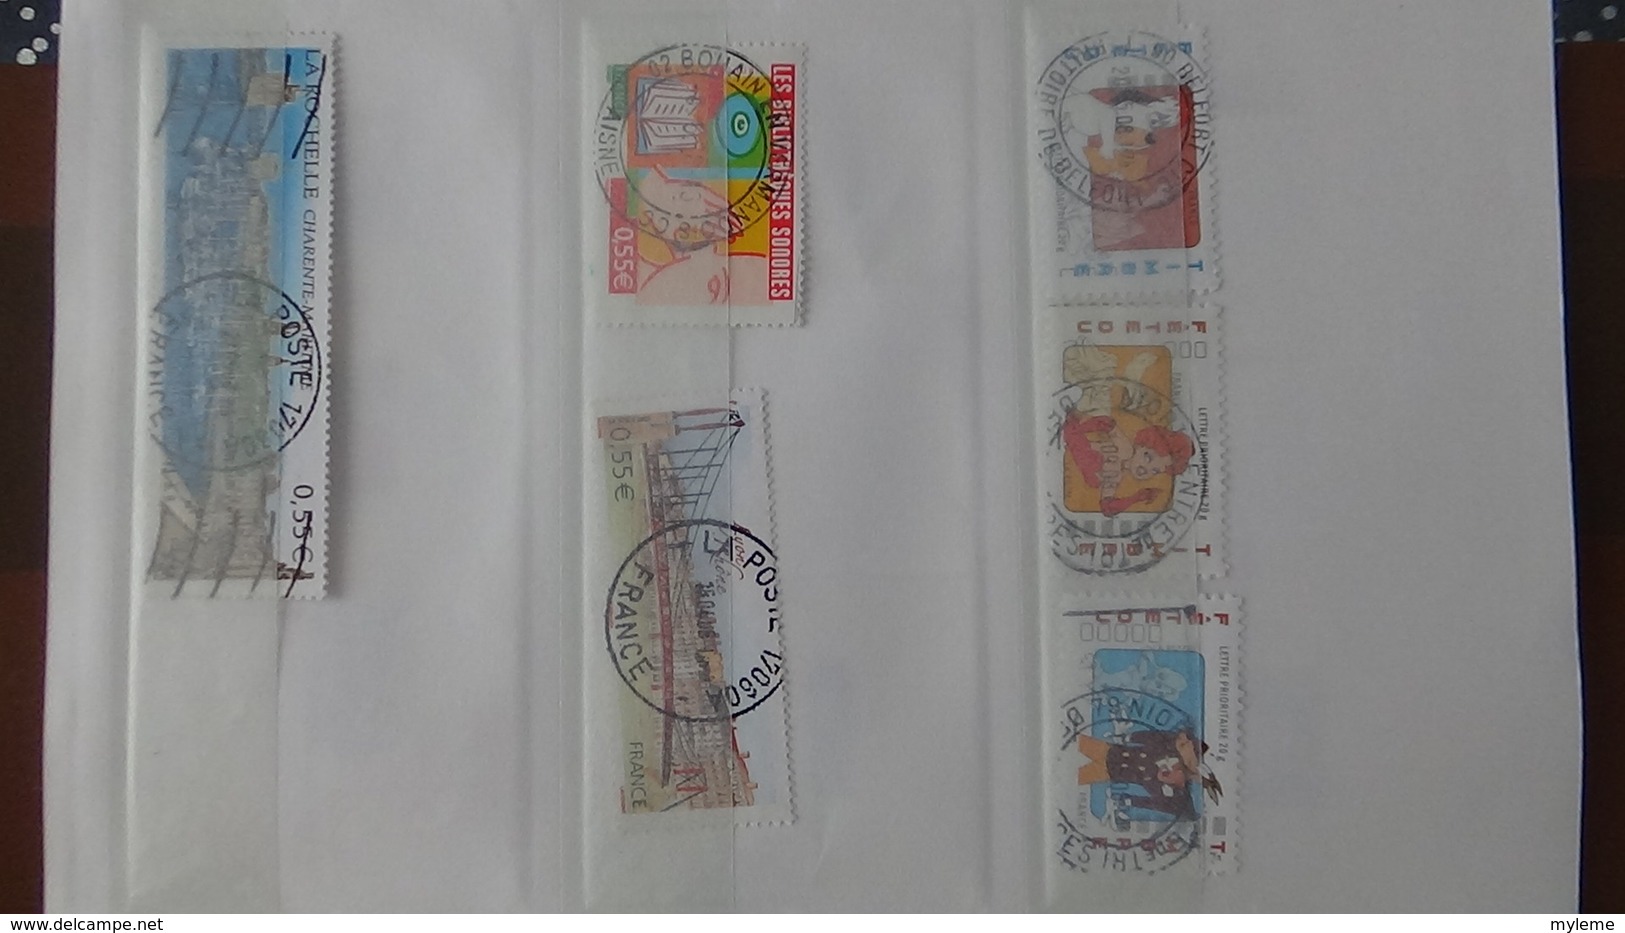 B409 Carnet à choix de timbres de France avec oblitérations rondes. Très sympa !!!